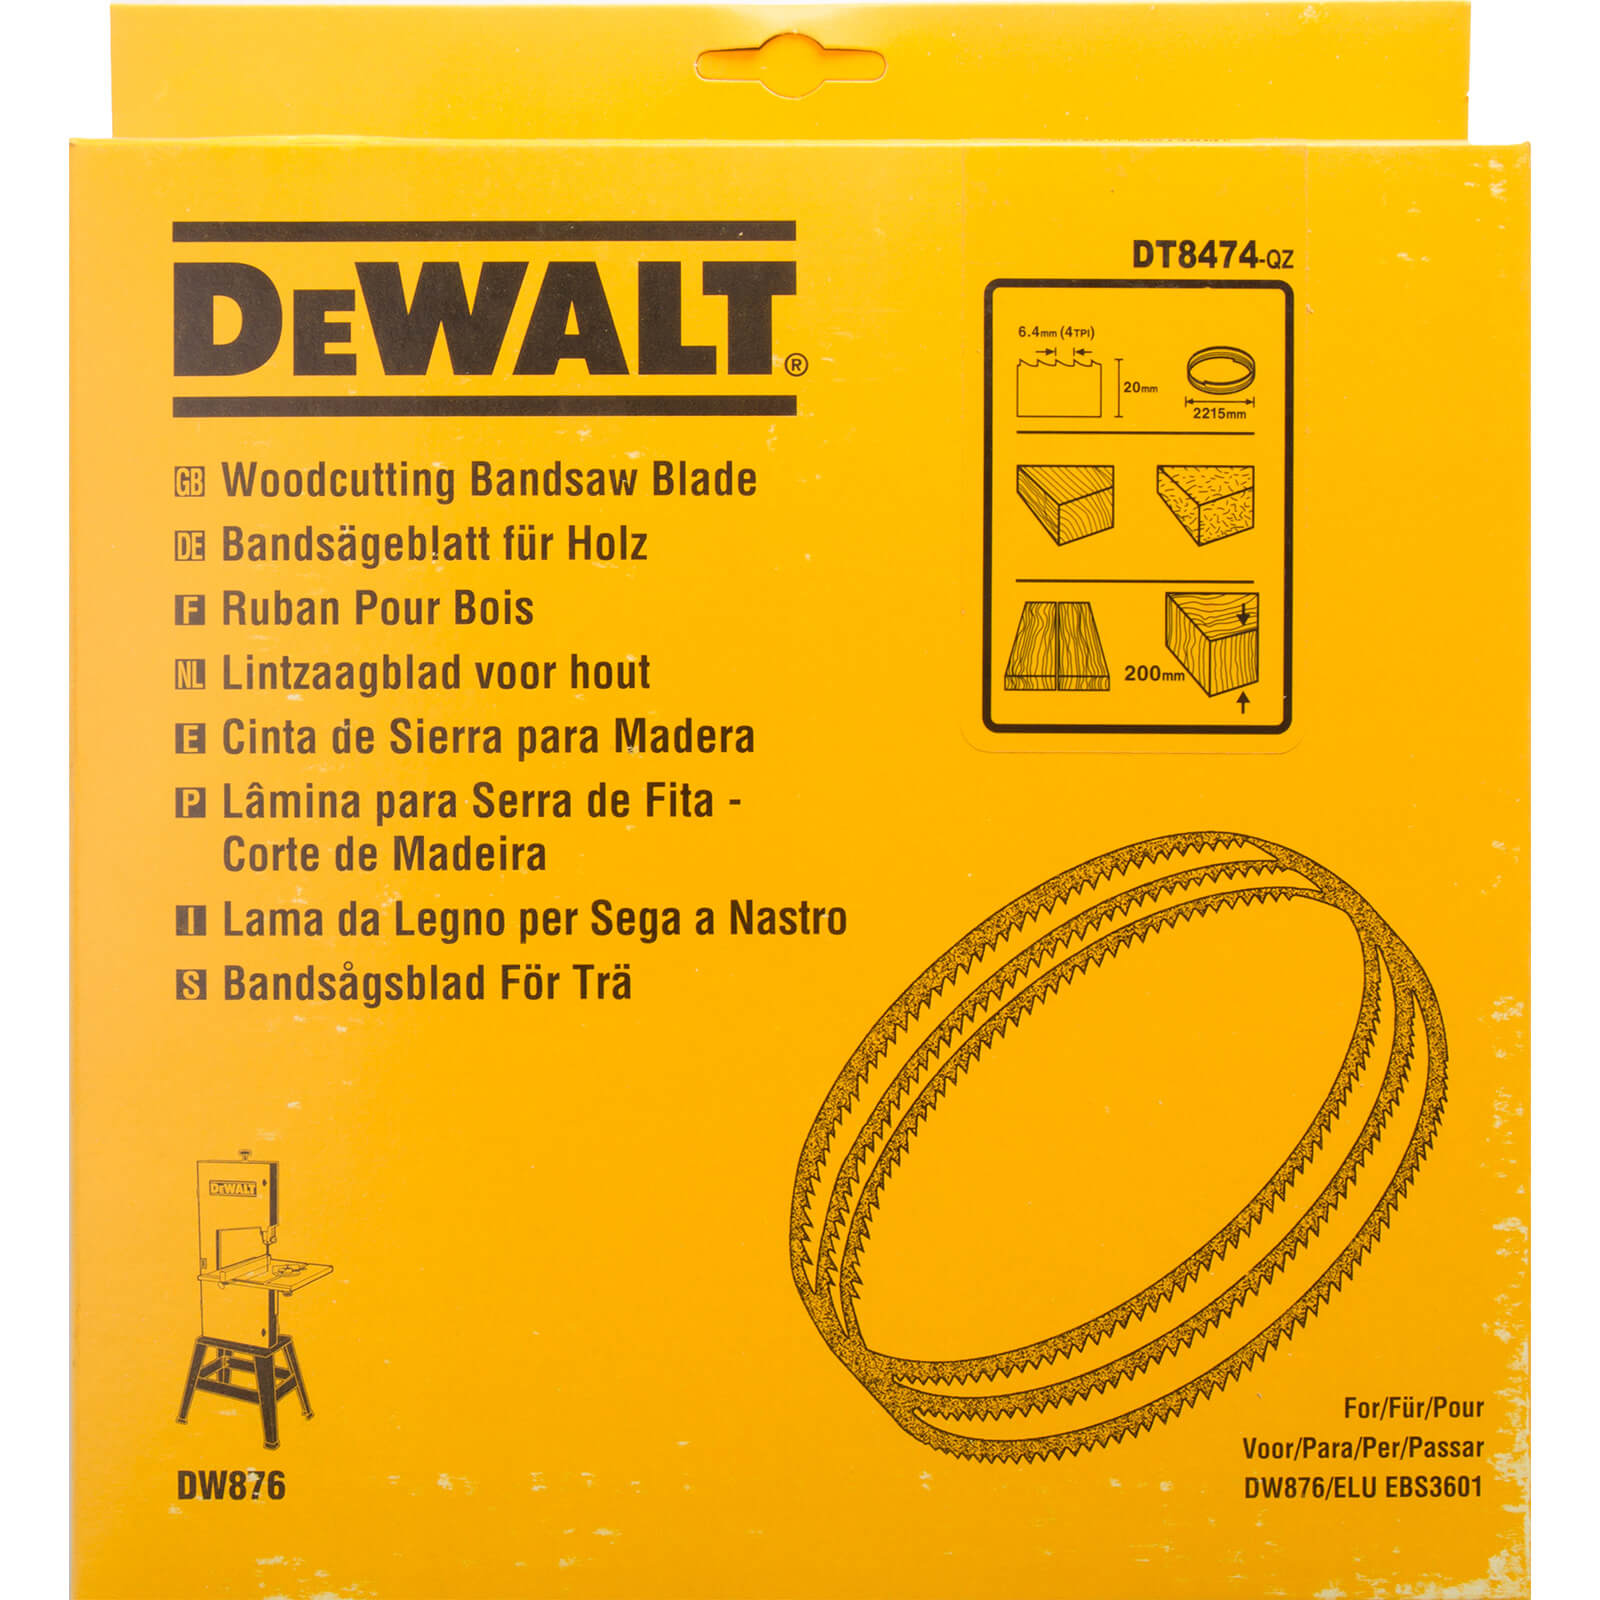 DeWALT Bandsägeblatt DT8474 für DW876 Extrem scharfe gehärtete Zähne 20mm von Dewalt